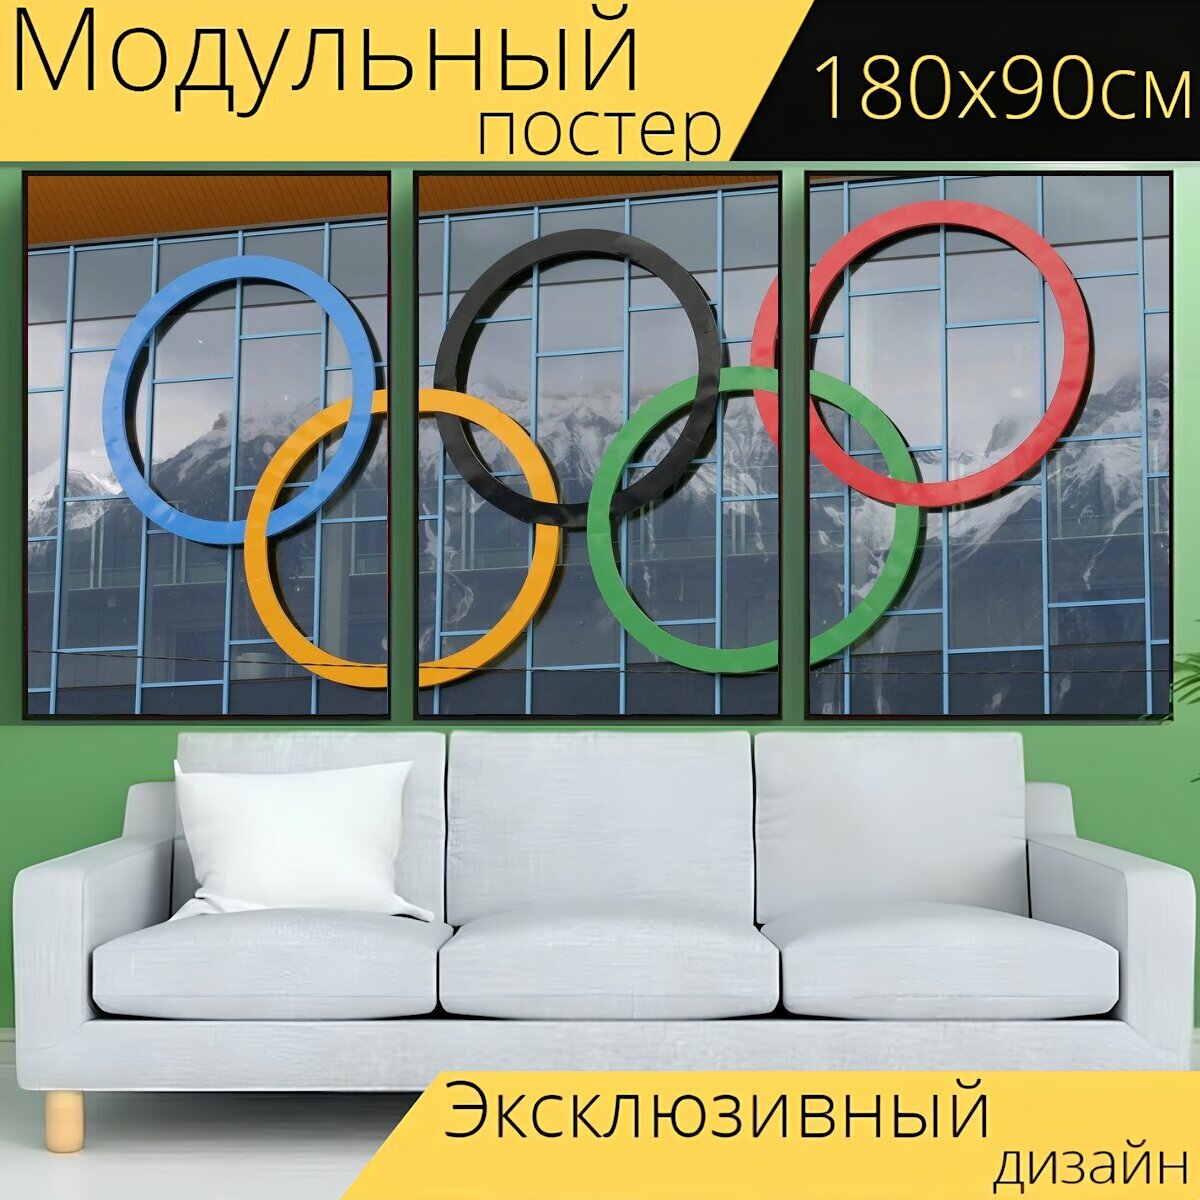 Модульный постер "Олимпийские кольца, олимпиада, кольца" 180 x 90 см. для интерьера